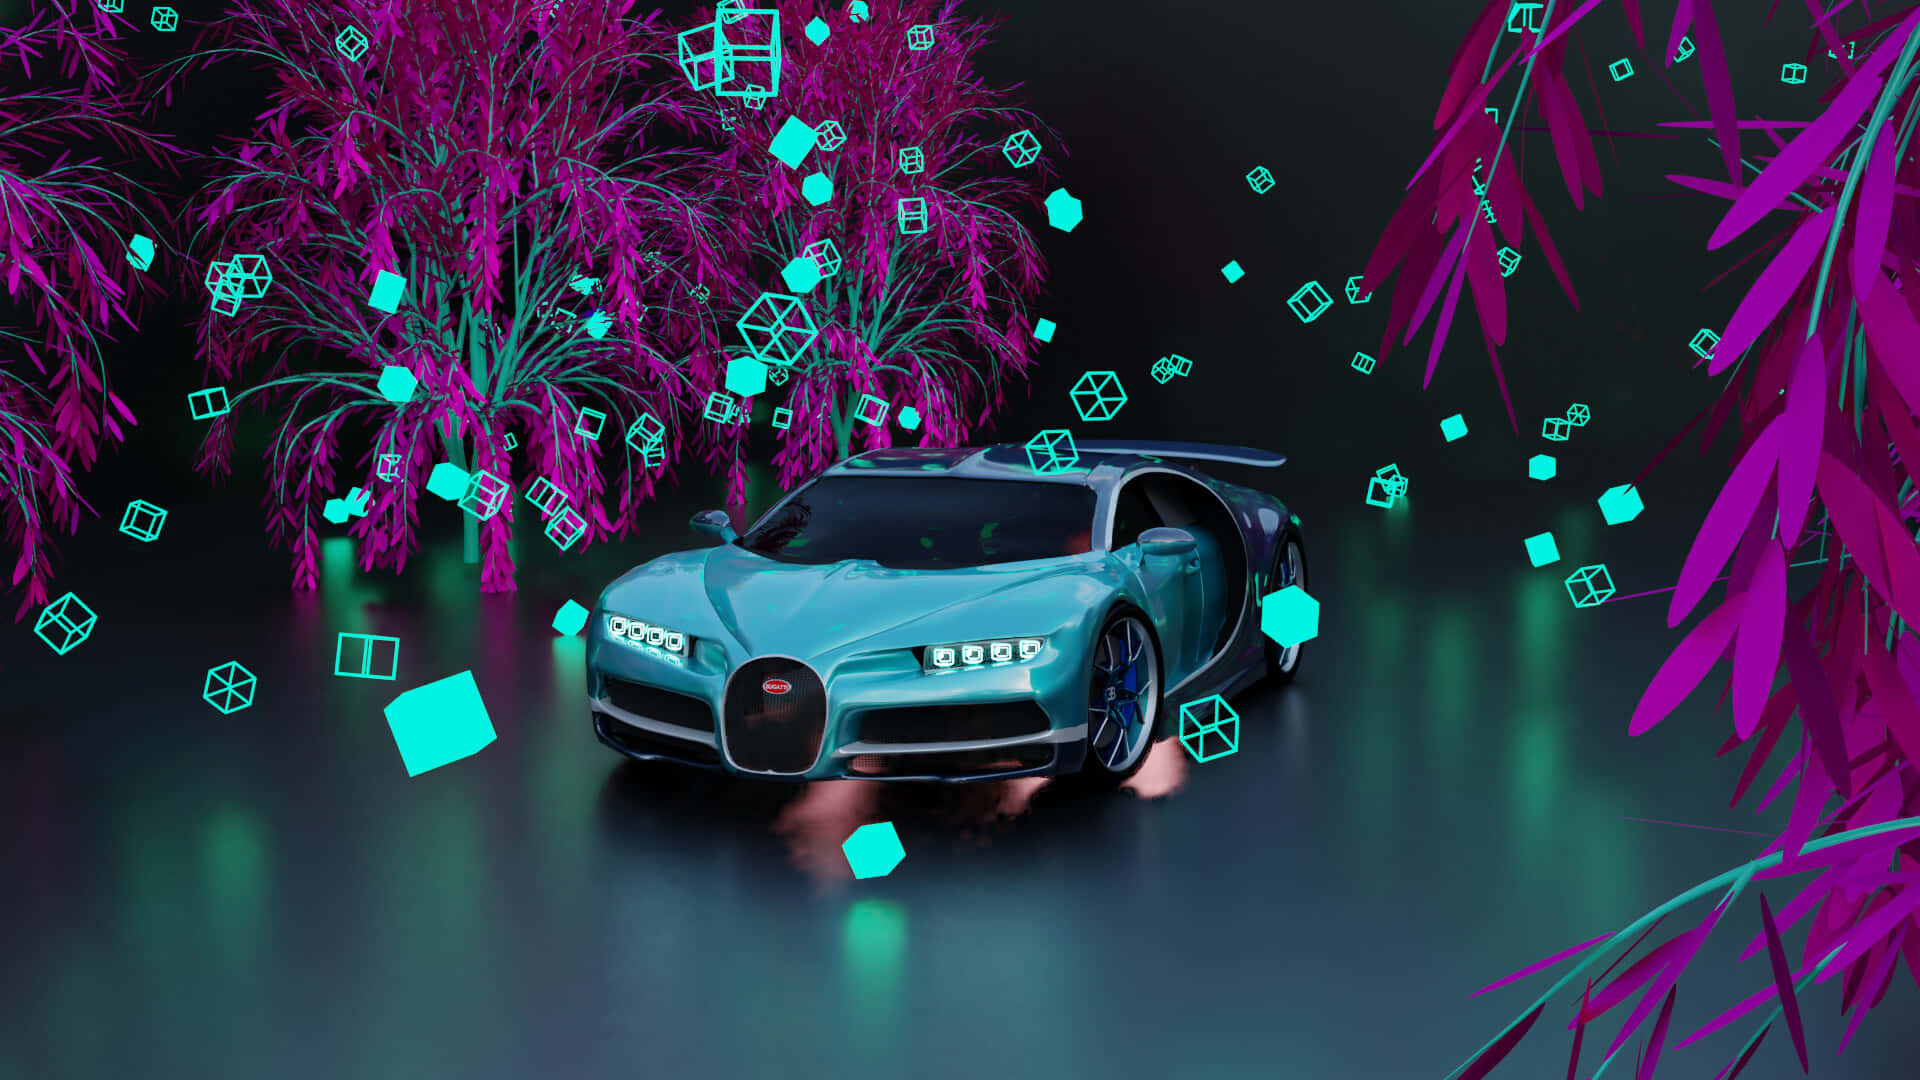 Schnell,elegant Und Stylisch - Der Neon Bugatti Wallpaper